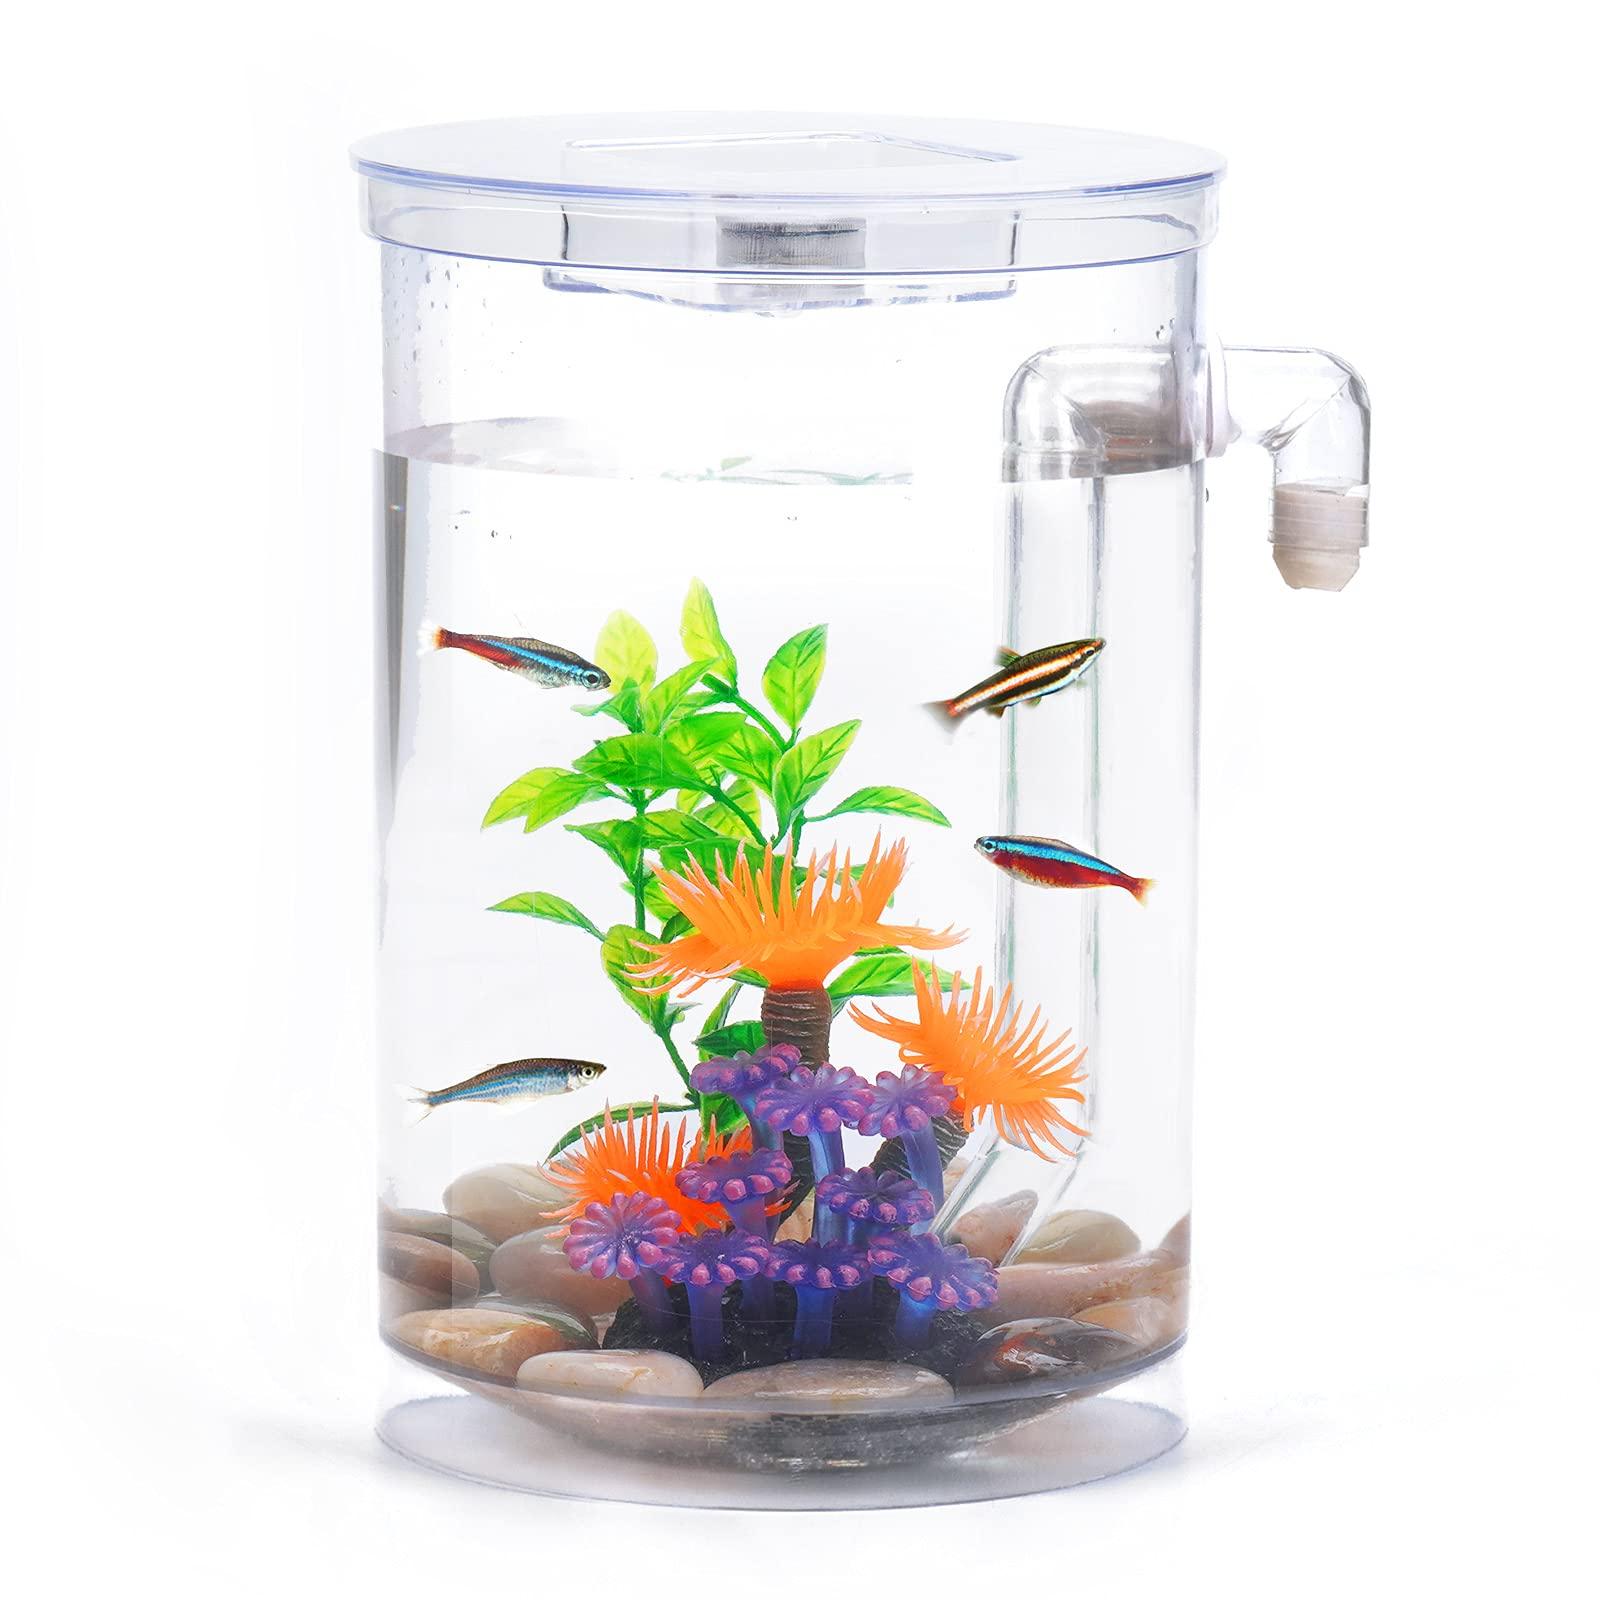 Buy Betta Fish Tank, 360 Aquarium with LED Light, 1 Gallon Fish